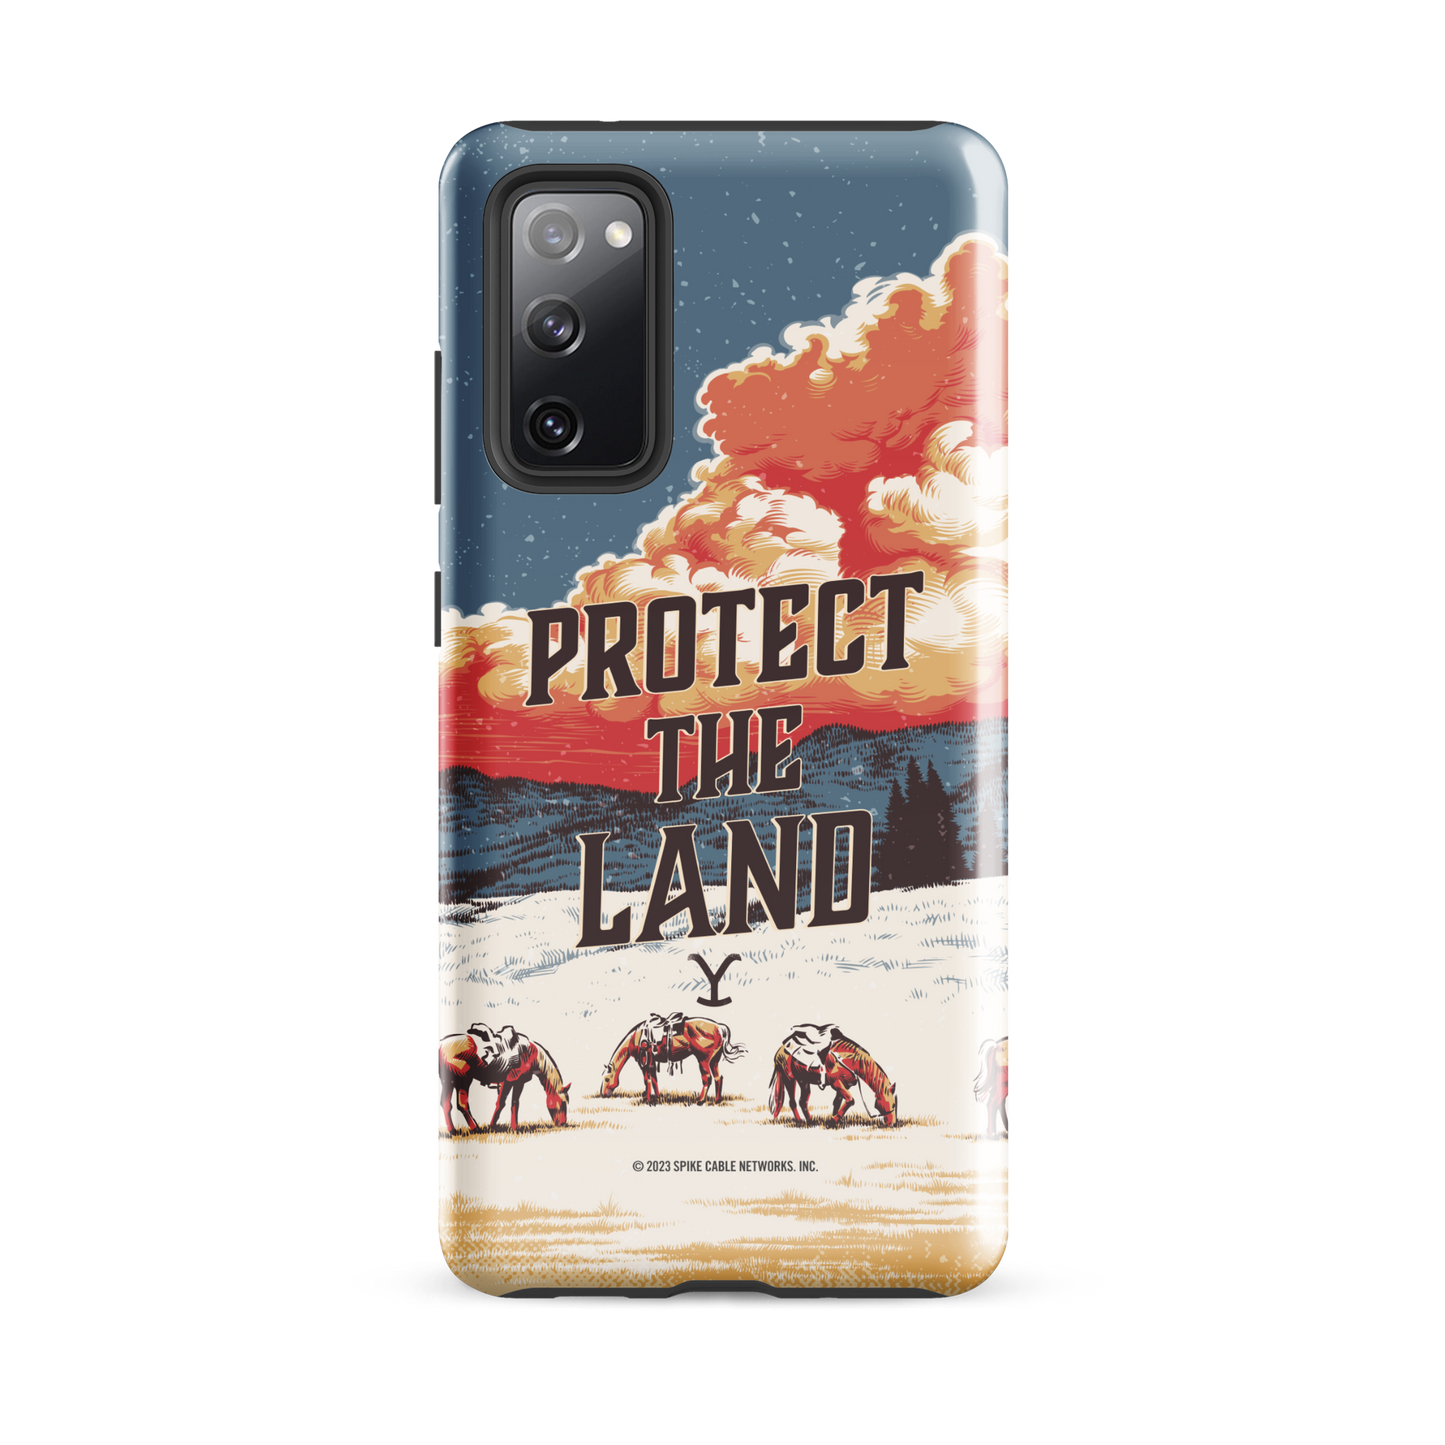 Yellowstone Schützen Sie das Land Tough Phone Case - Samsung